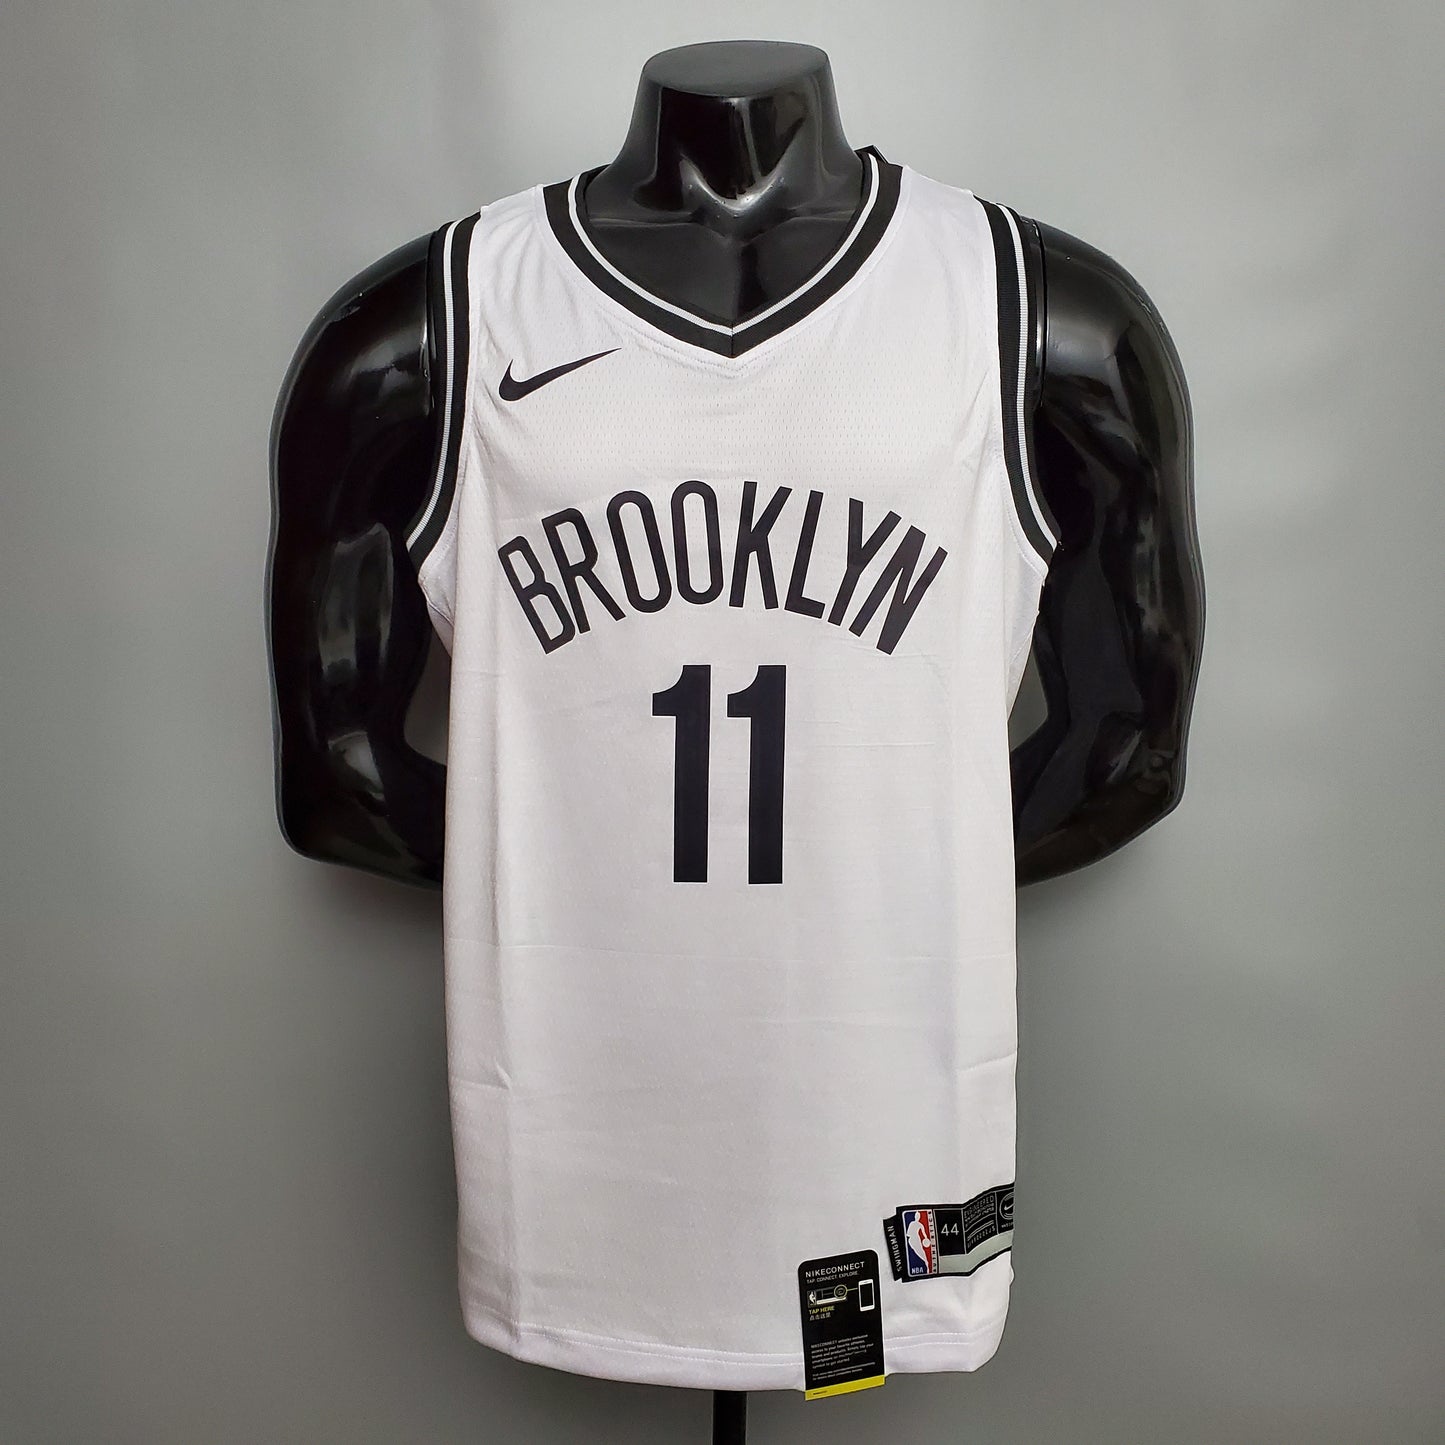 Brooklyn Nets Jersey